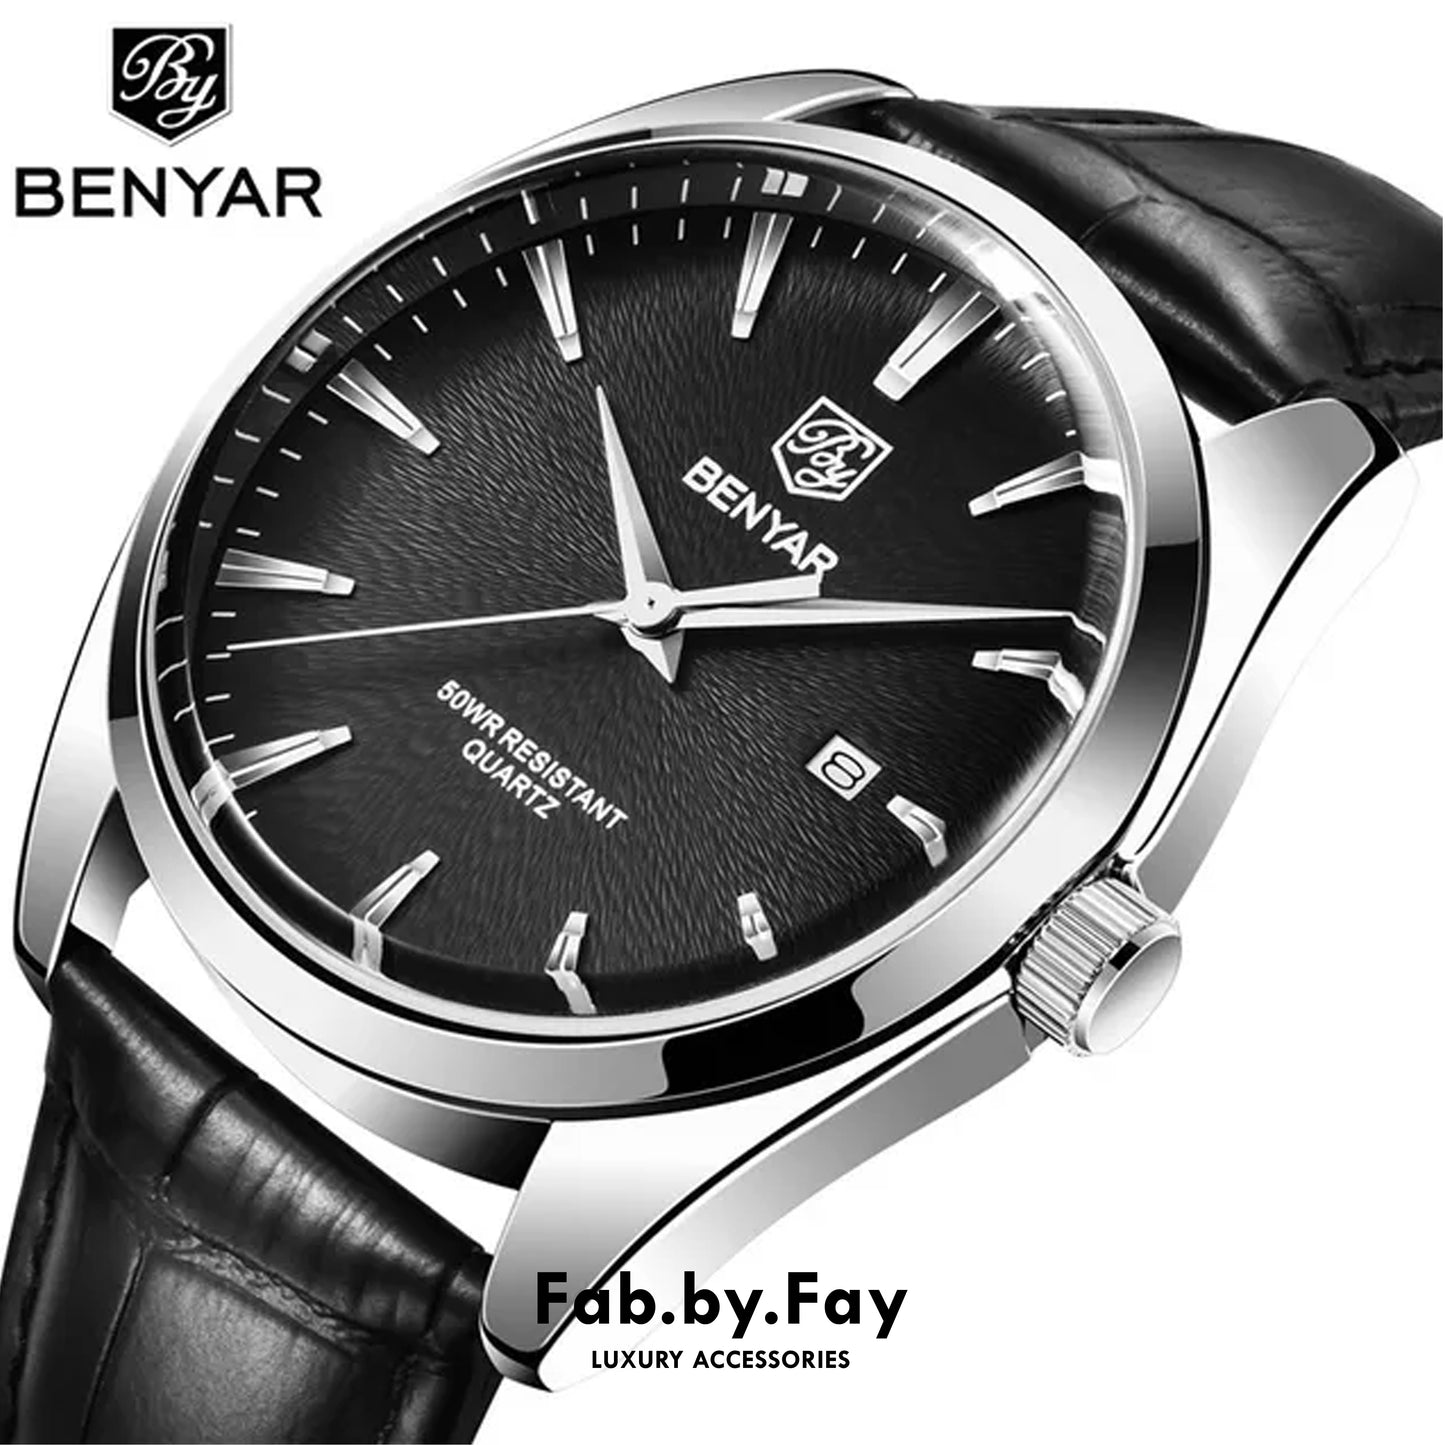 BENYAR Men's Fashion Classic Watch